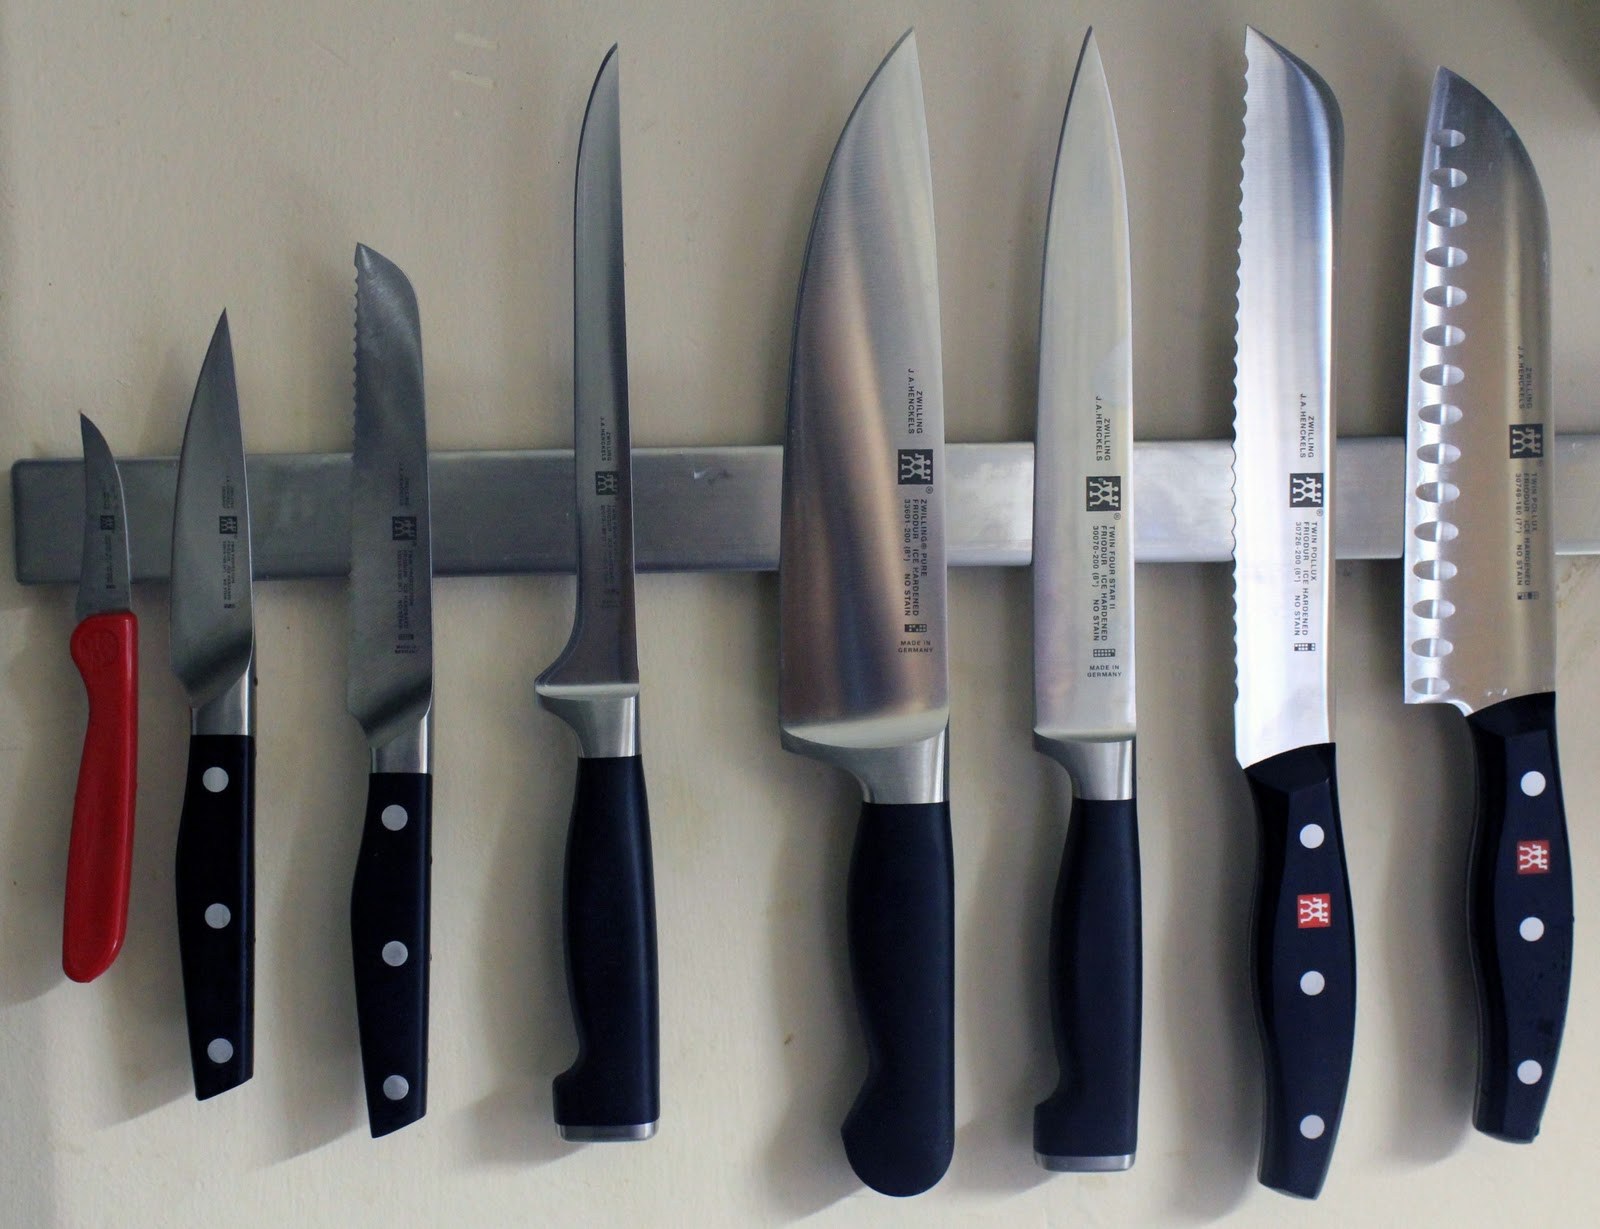 Gli utensili della cucina giapponese: i coltelli